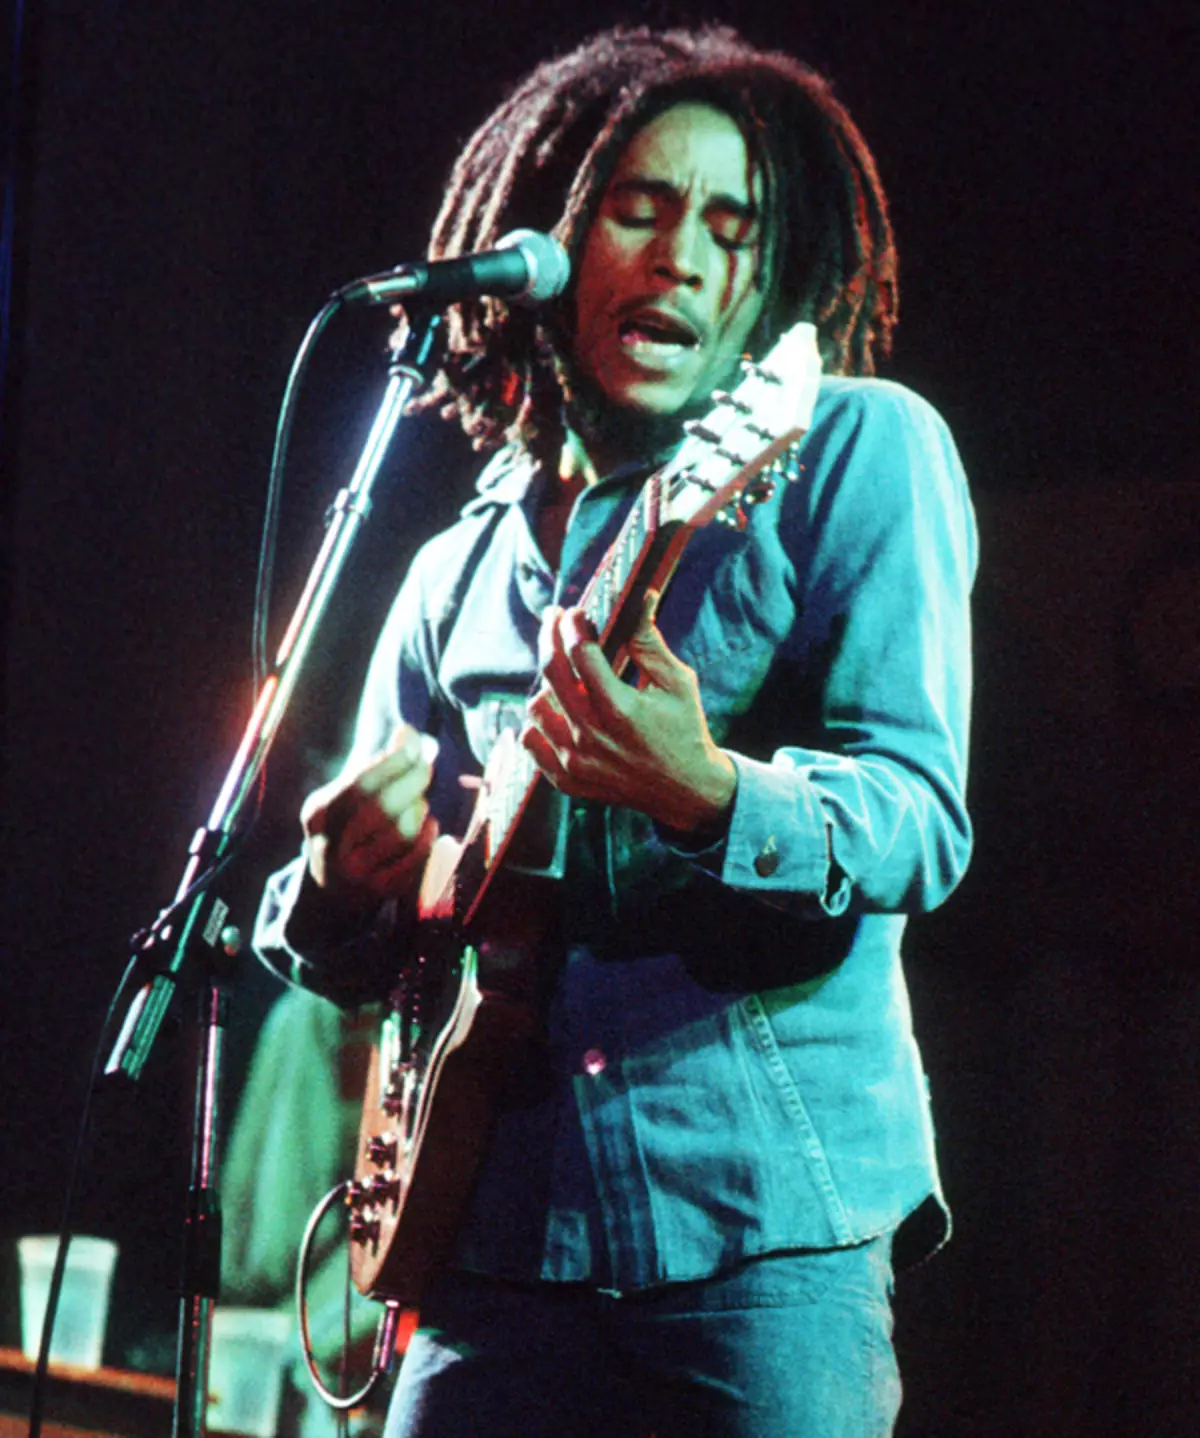 Boba Marley ne pouvait pas être appelé beau, mais les femmes étaient folles de lui